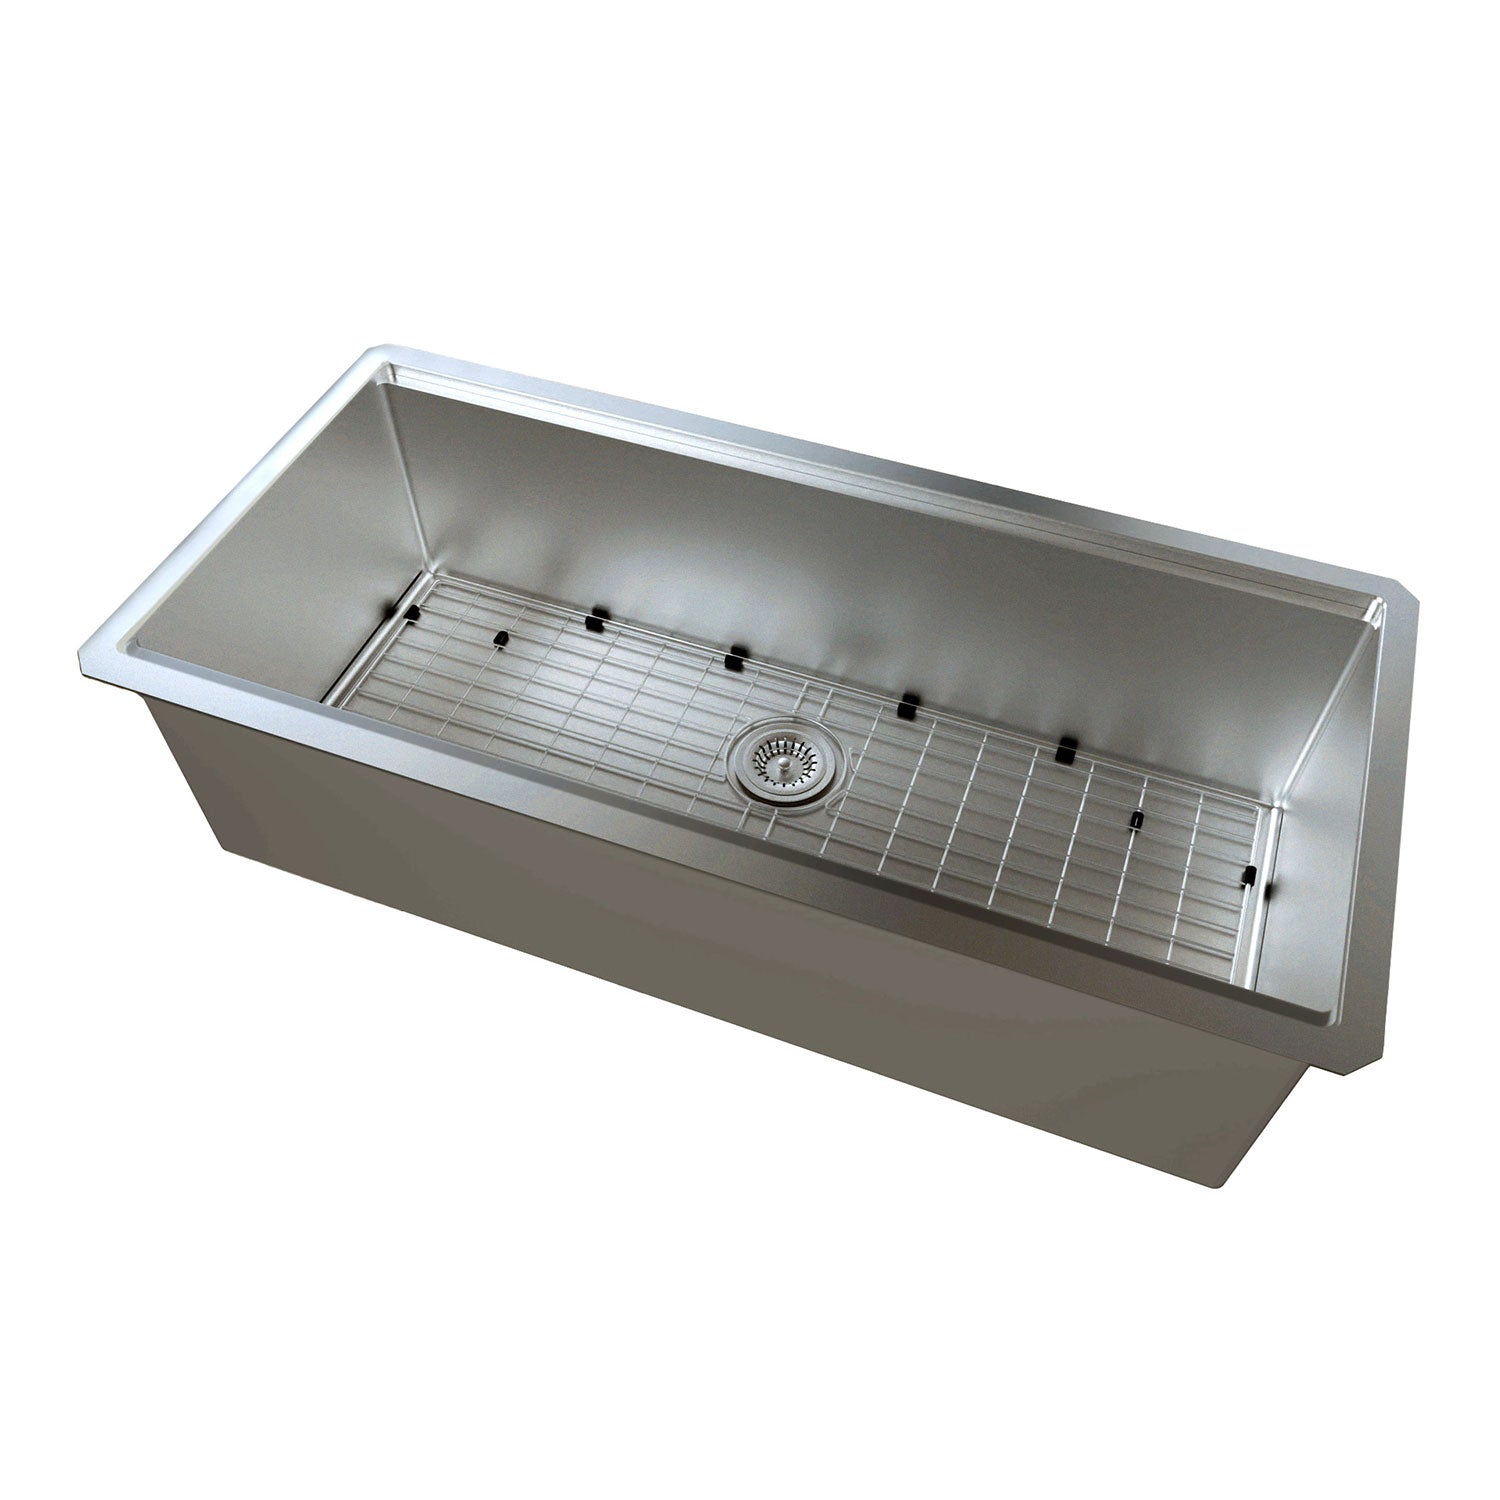 DAX Workstation Single Bowl Undermount Kitchen Sink 59